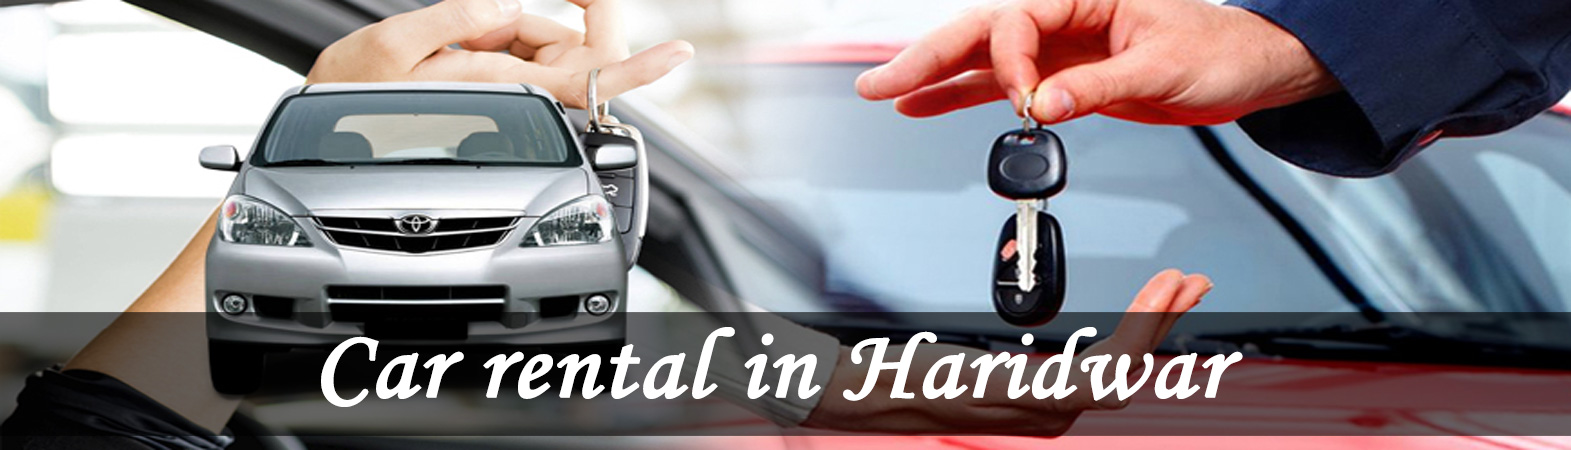 Haridwar Car Rental, Car Rental in Haridwar